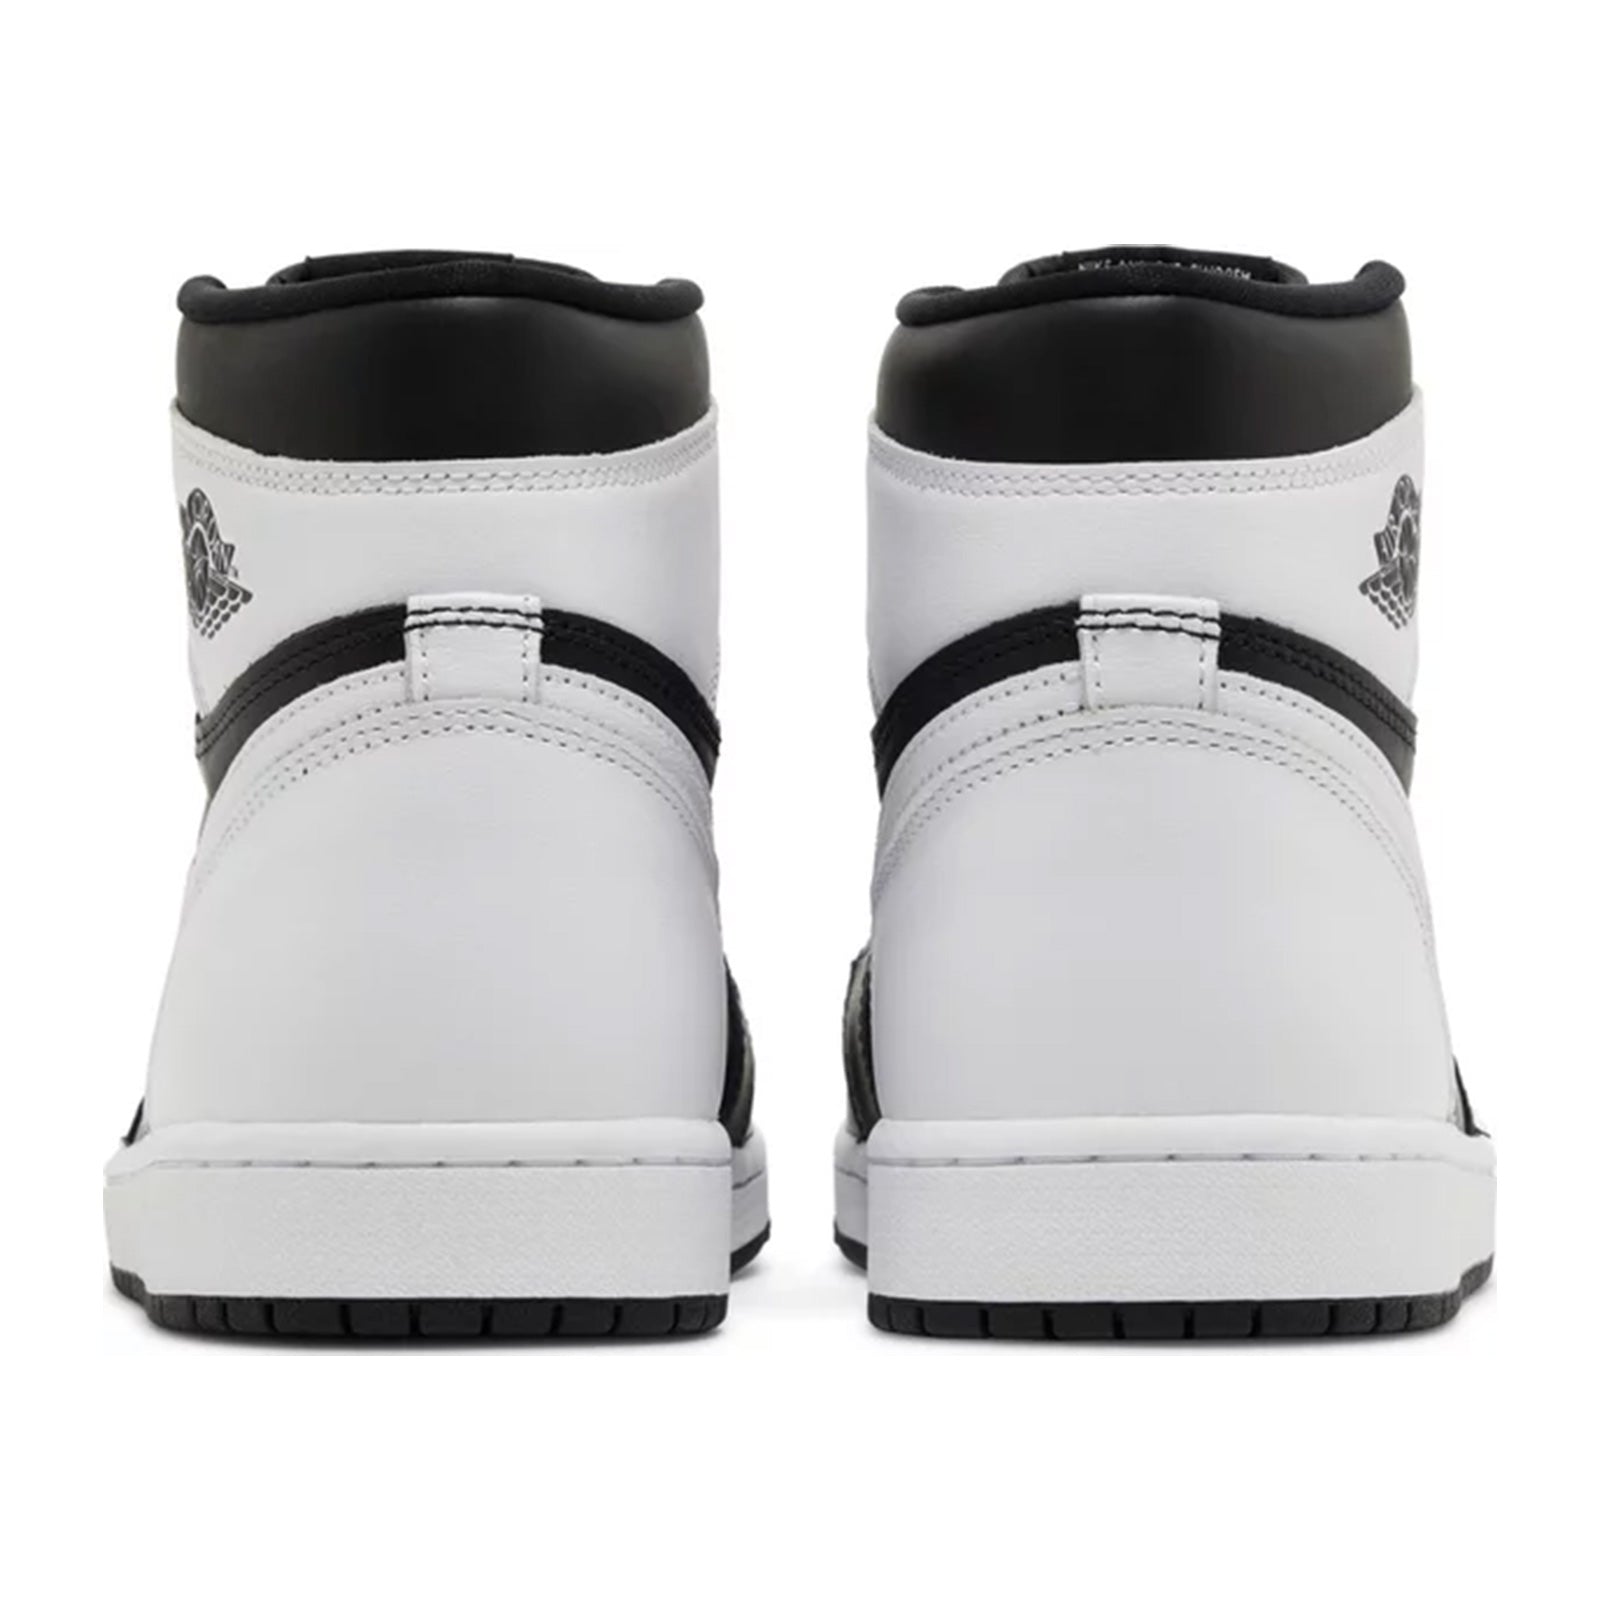 Air Jordan 1 High, Retro OG Black White 2.0